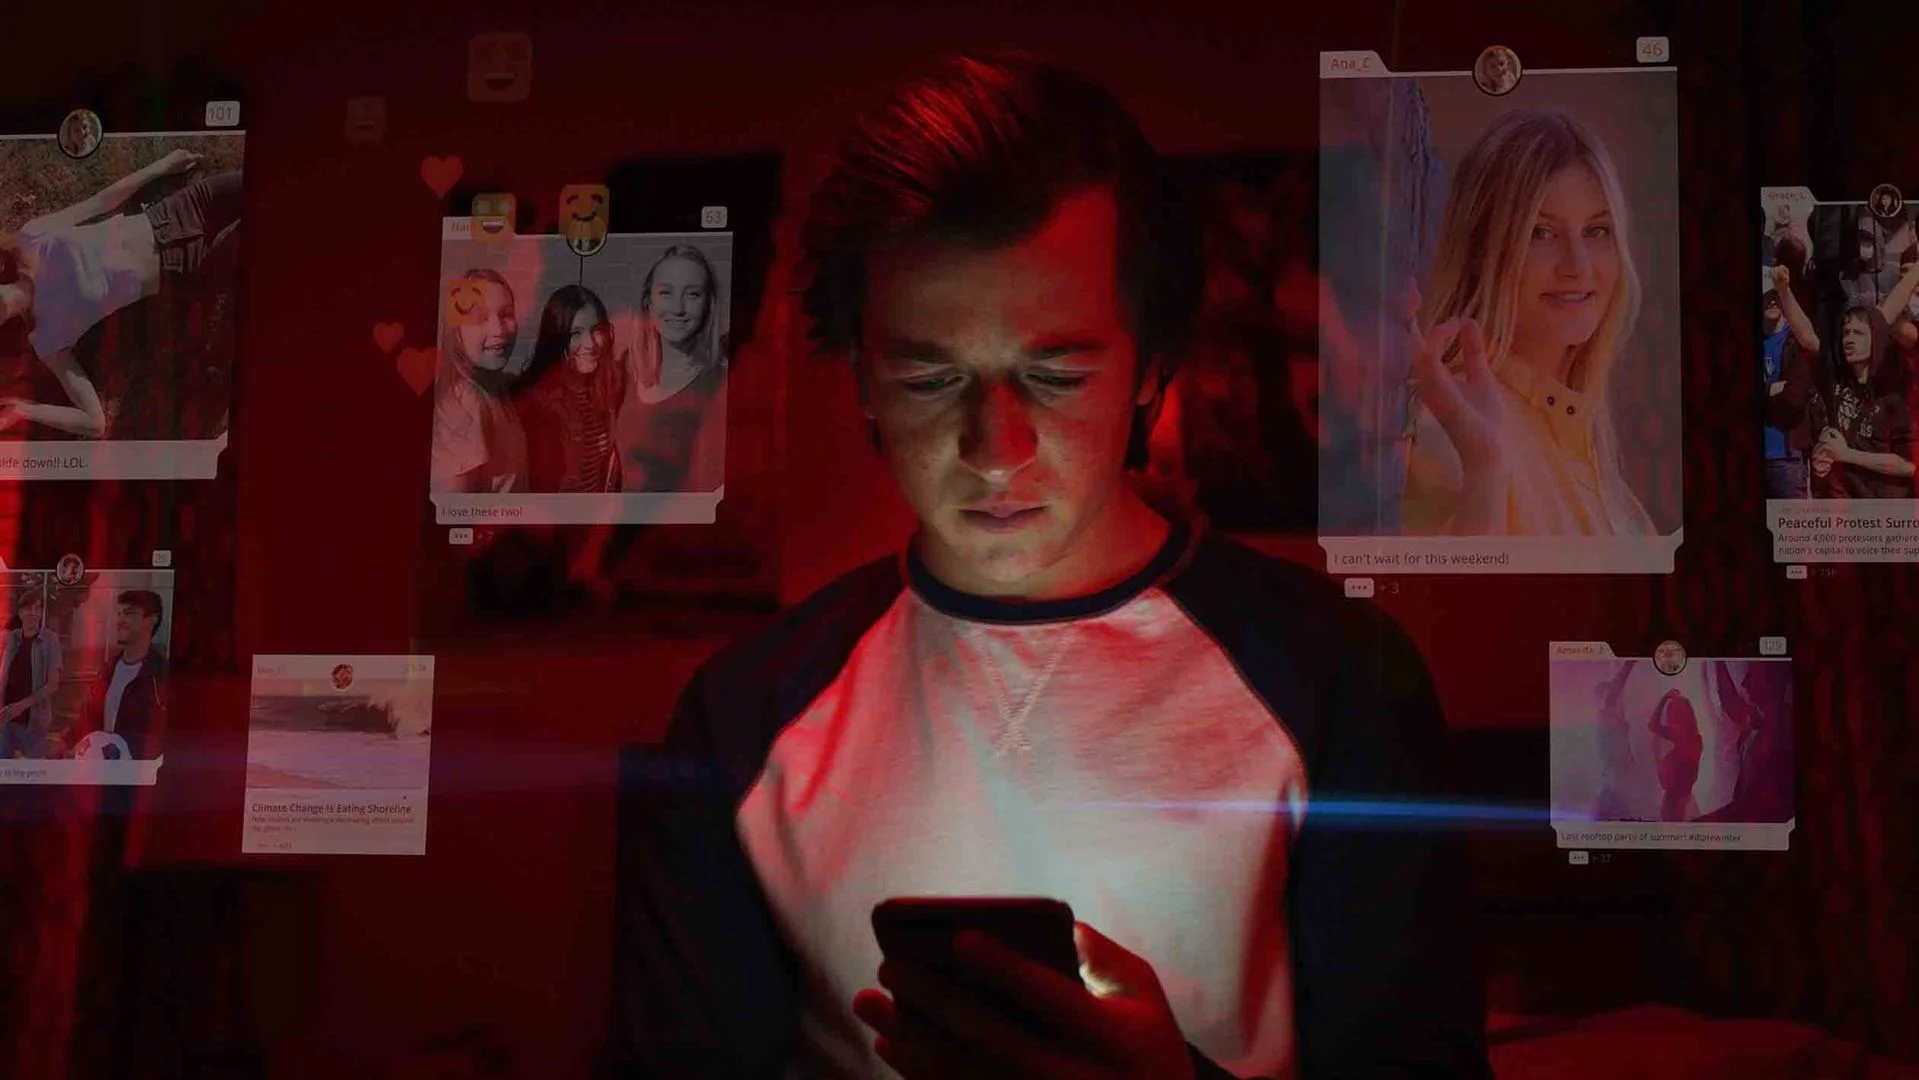 Screenshot aus dem Film: Das Dilemma mit den sozialen Medien. Junger Mann mit Handy in der Hand in einem dunklen Zimmer, Transparent eingeblendet Oberflächen von Social-Medie-PlattformenSOcial